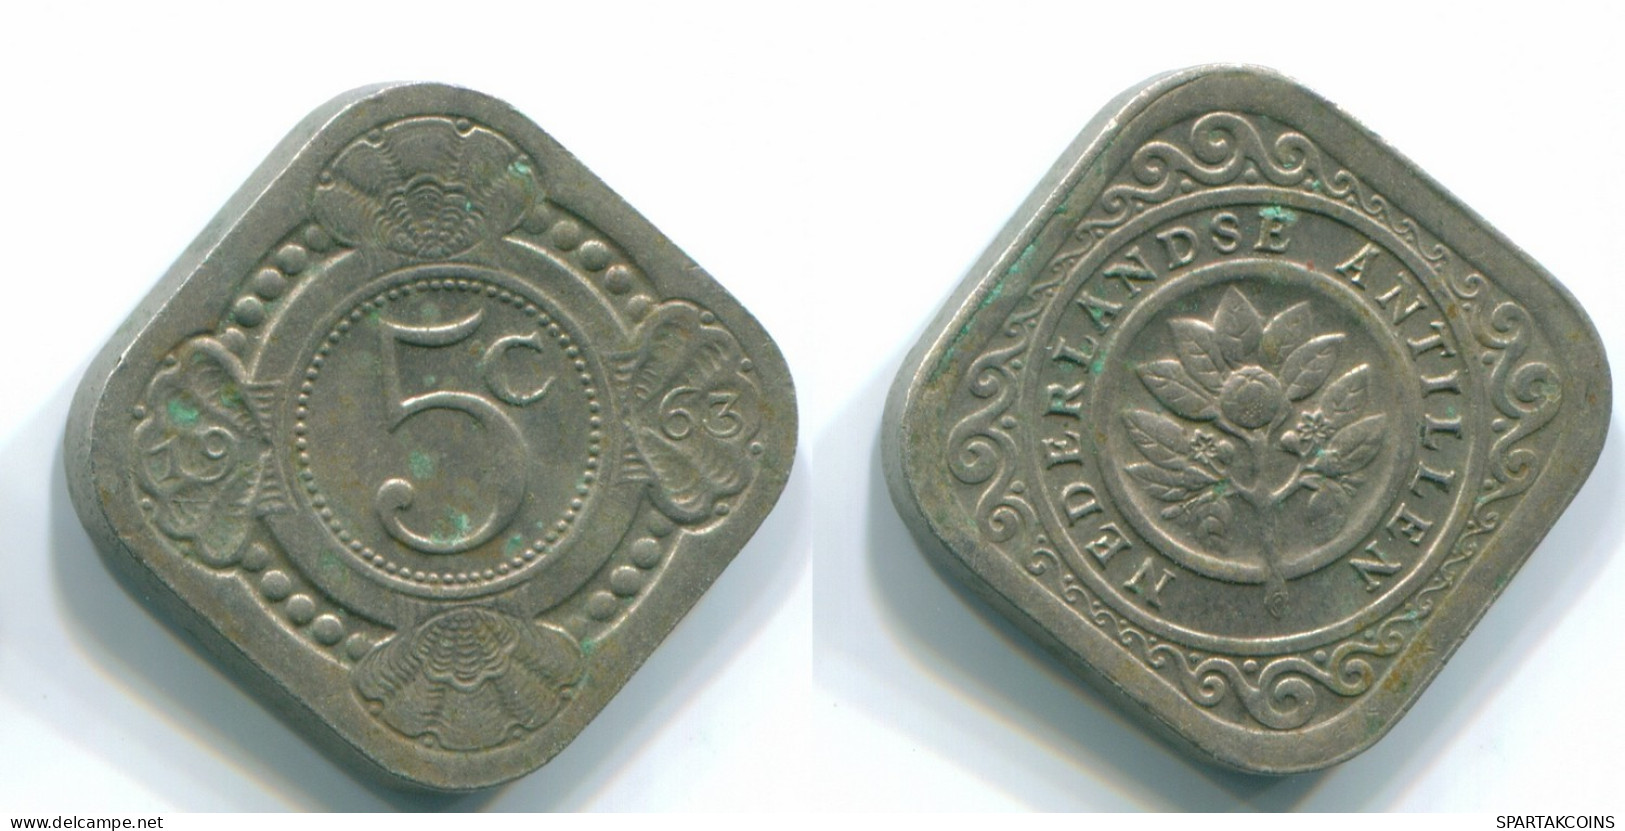 5 CENTS 1963 NIEDERLÄNDISCHE ANTILLEN Nickel Koloniale Münze #S12426.D.A - Antillas Neerlandesas